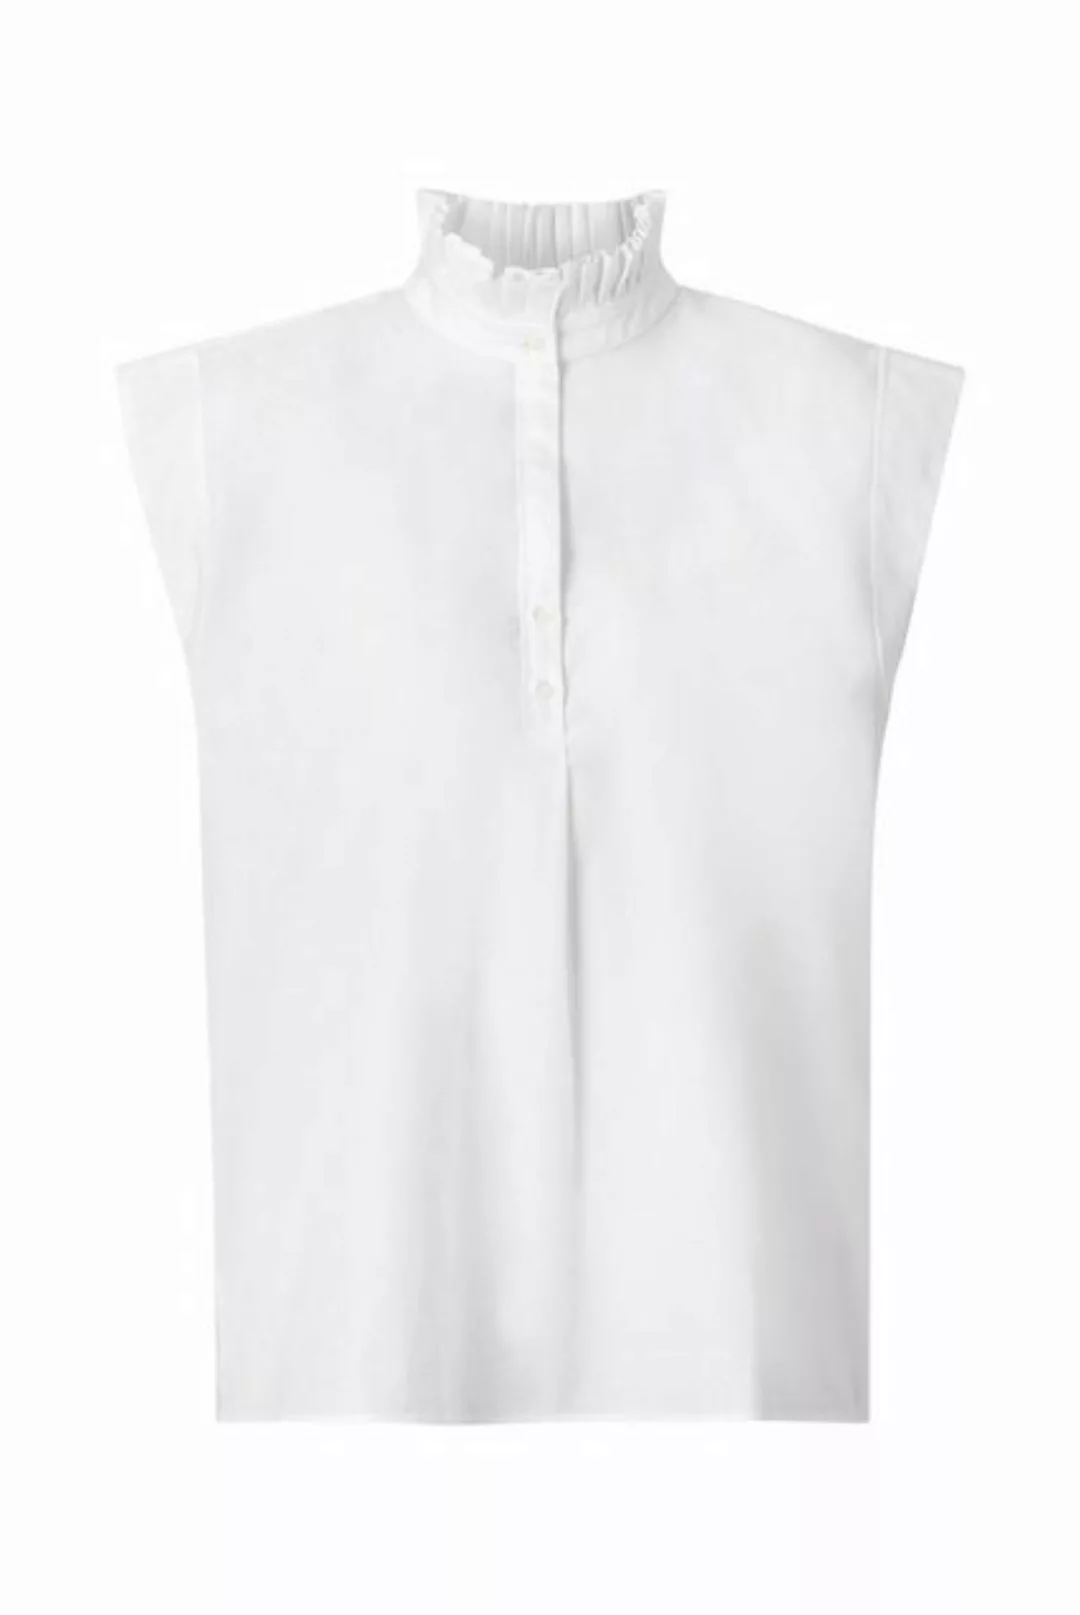 Rich & Royal Blusenshirt cotton blouse with ruffle sustainab, white günstig online kaufen